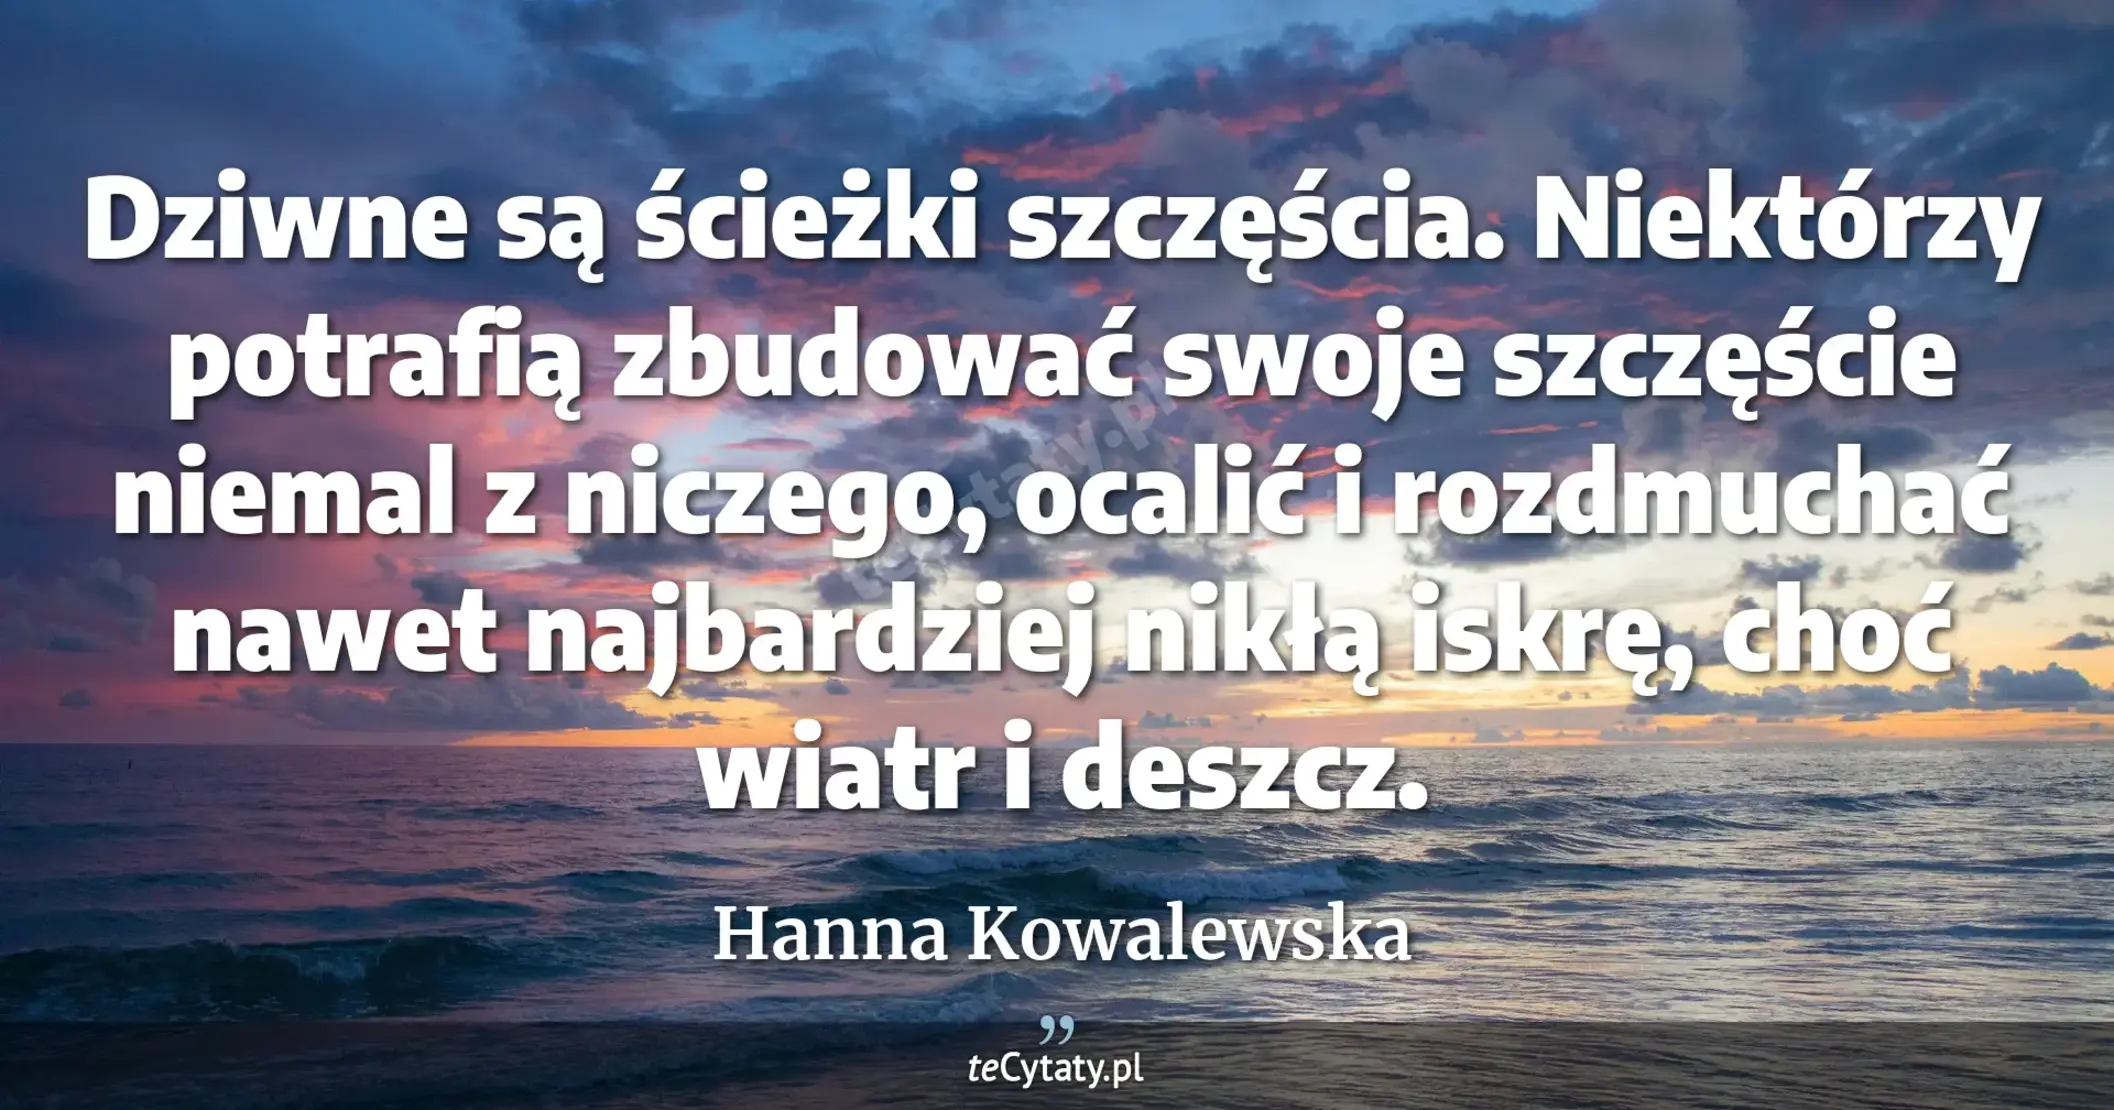 Dziwne są ścieżki szczęścia. Niektórzy potrafią zbudować swoje szczęście niemal z niczego, ocalić i rozdmuchać nawet najbardziej nikłą iskrę, choć wiatr i deszcz. - Hanna Kowalewska